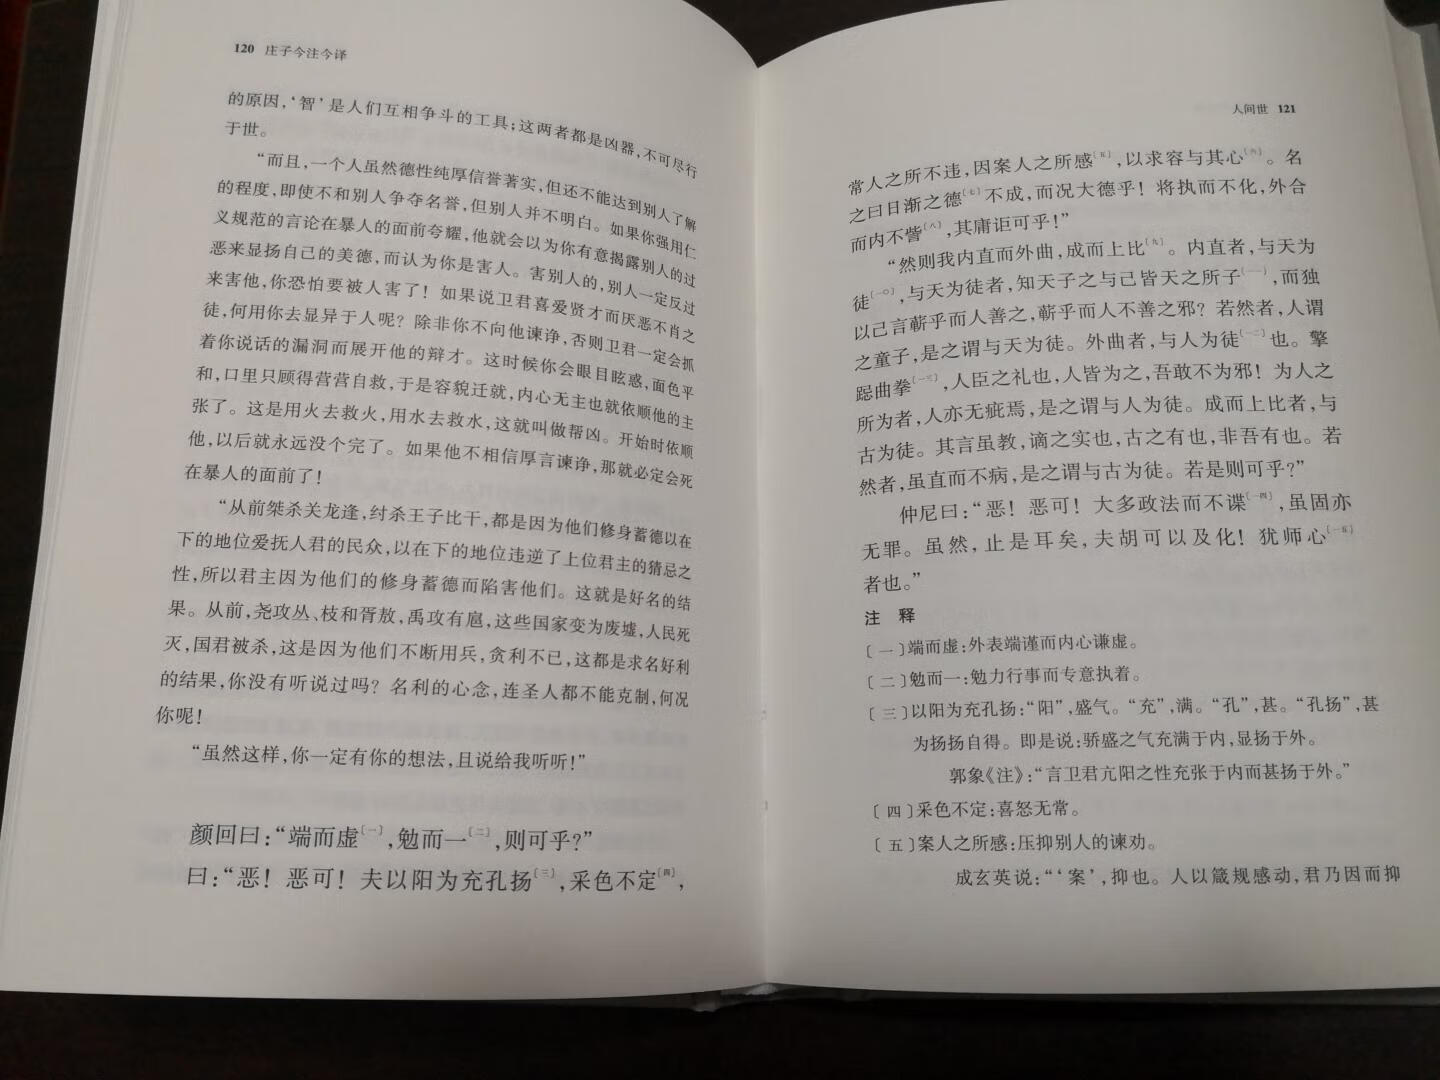 中华书局出品，质量有保证。有文言文原文、注释和白话文译文，适合我阅读。